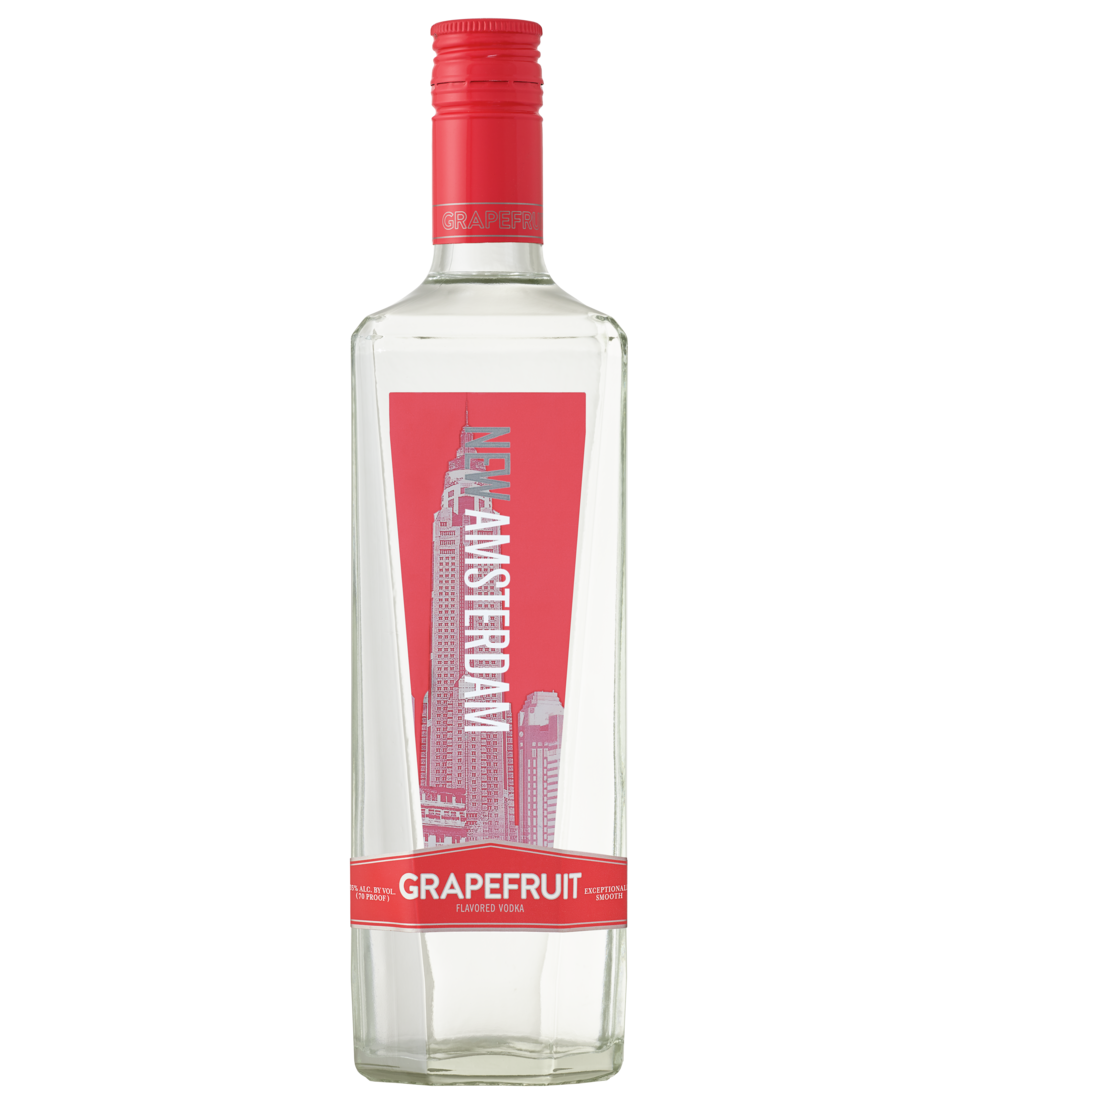 New Amsterdam Grapefruit Vodka 1.75 L